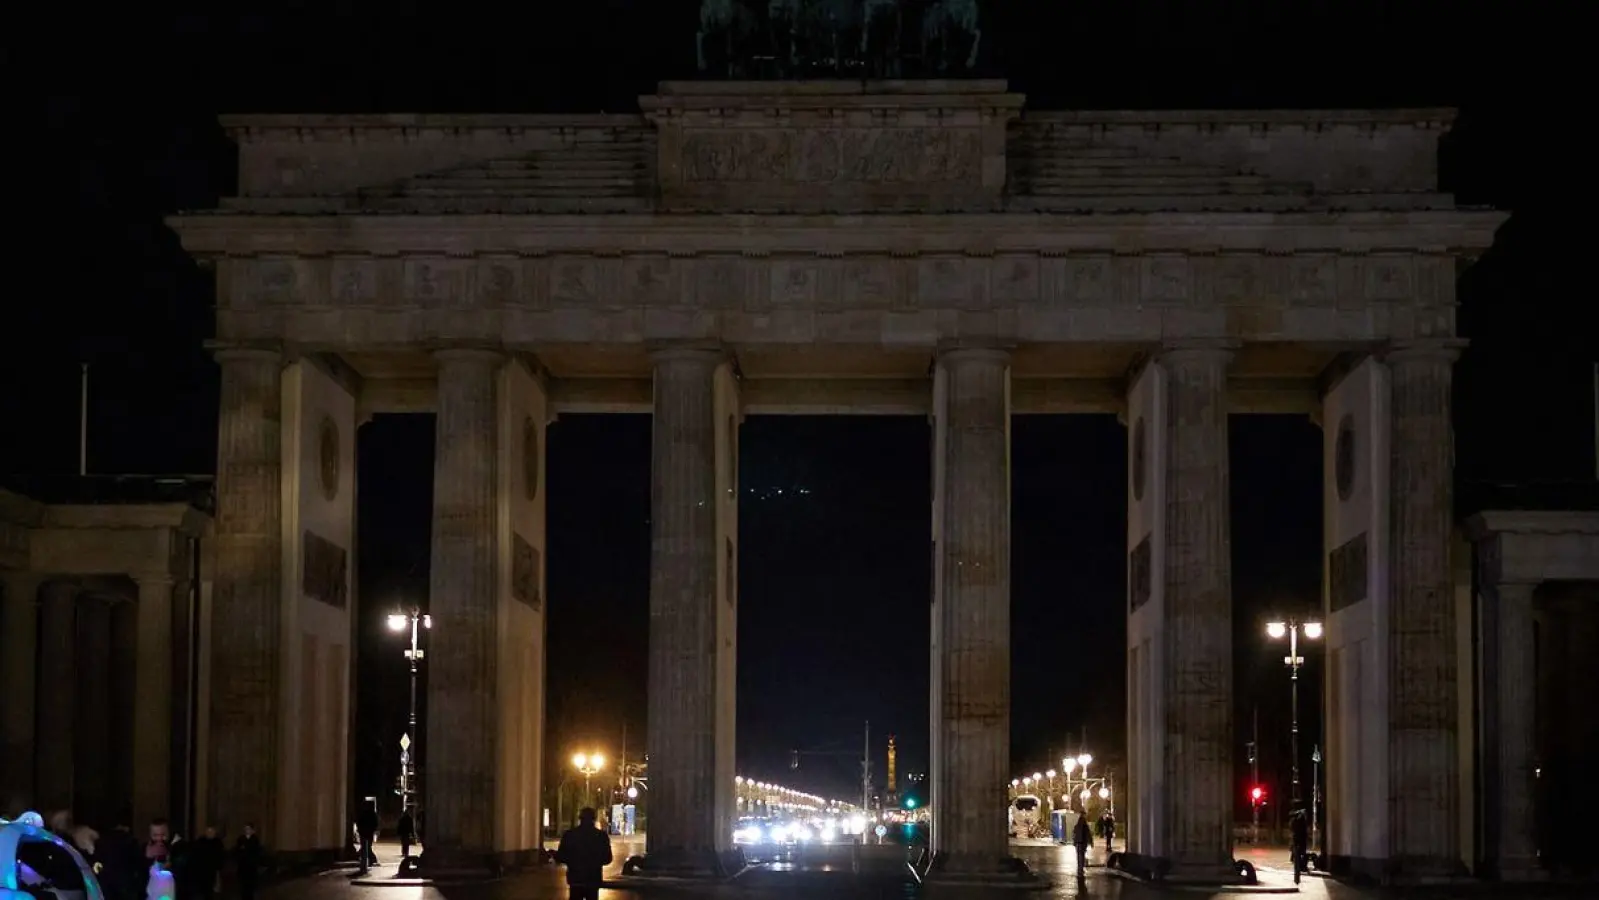 Berlin beteiligt sich an der weltweiten Aktion „Earth Hour“ und schaltet das Licht am Brandenburger Tor aus. (Foto: Joerg Carstensen/dpa)